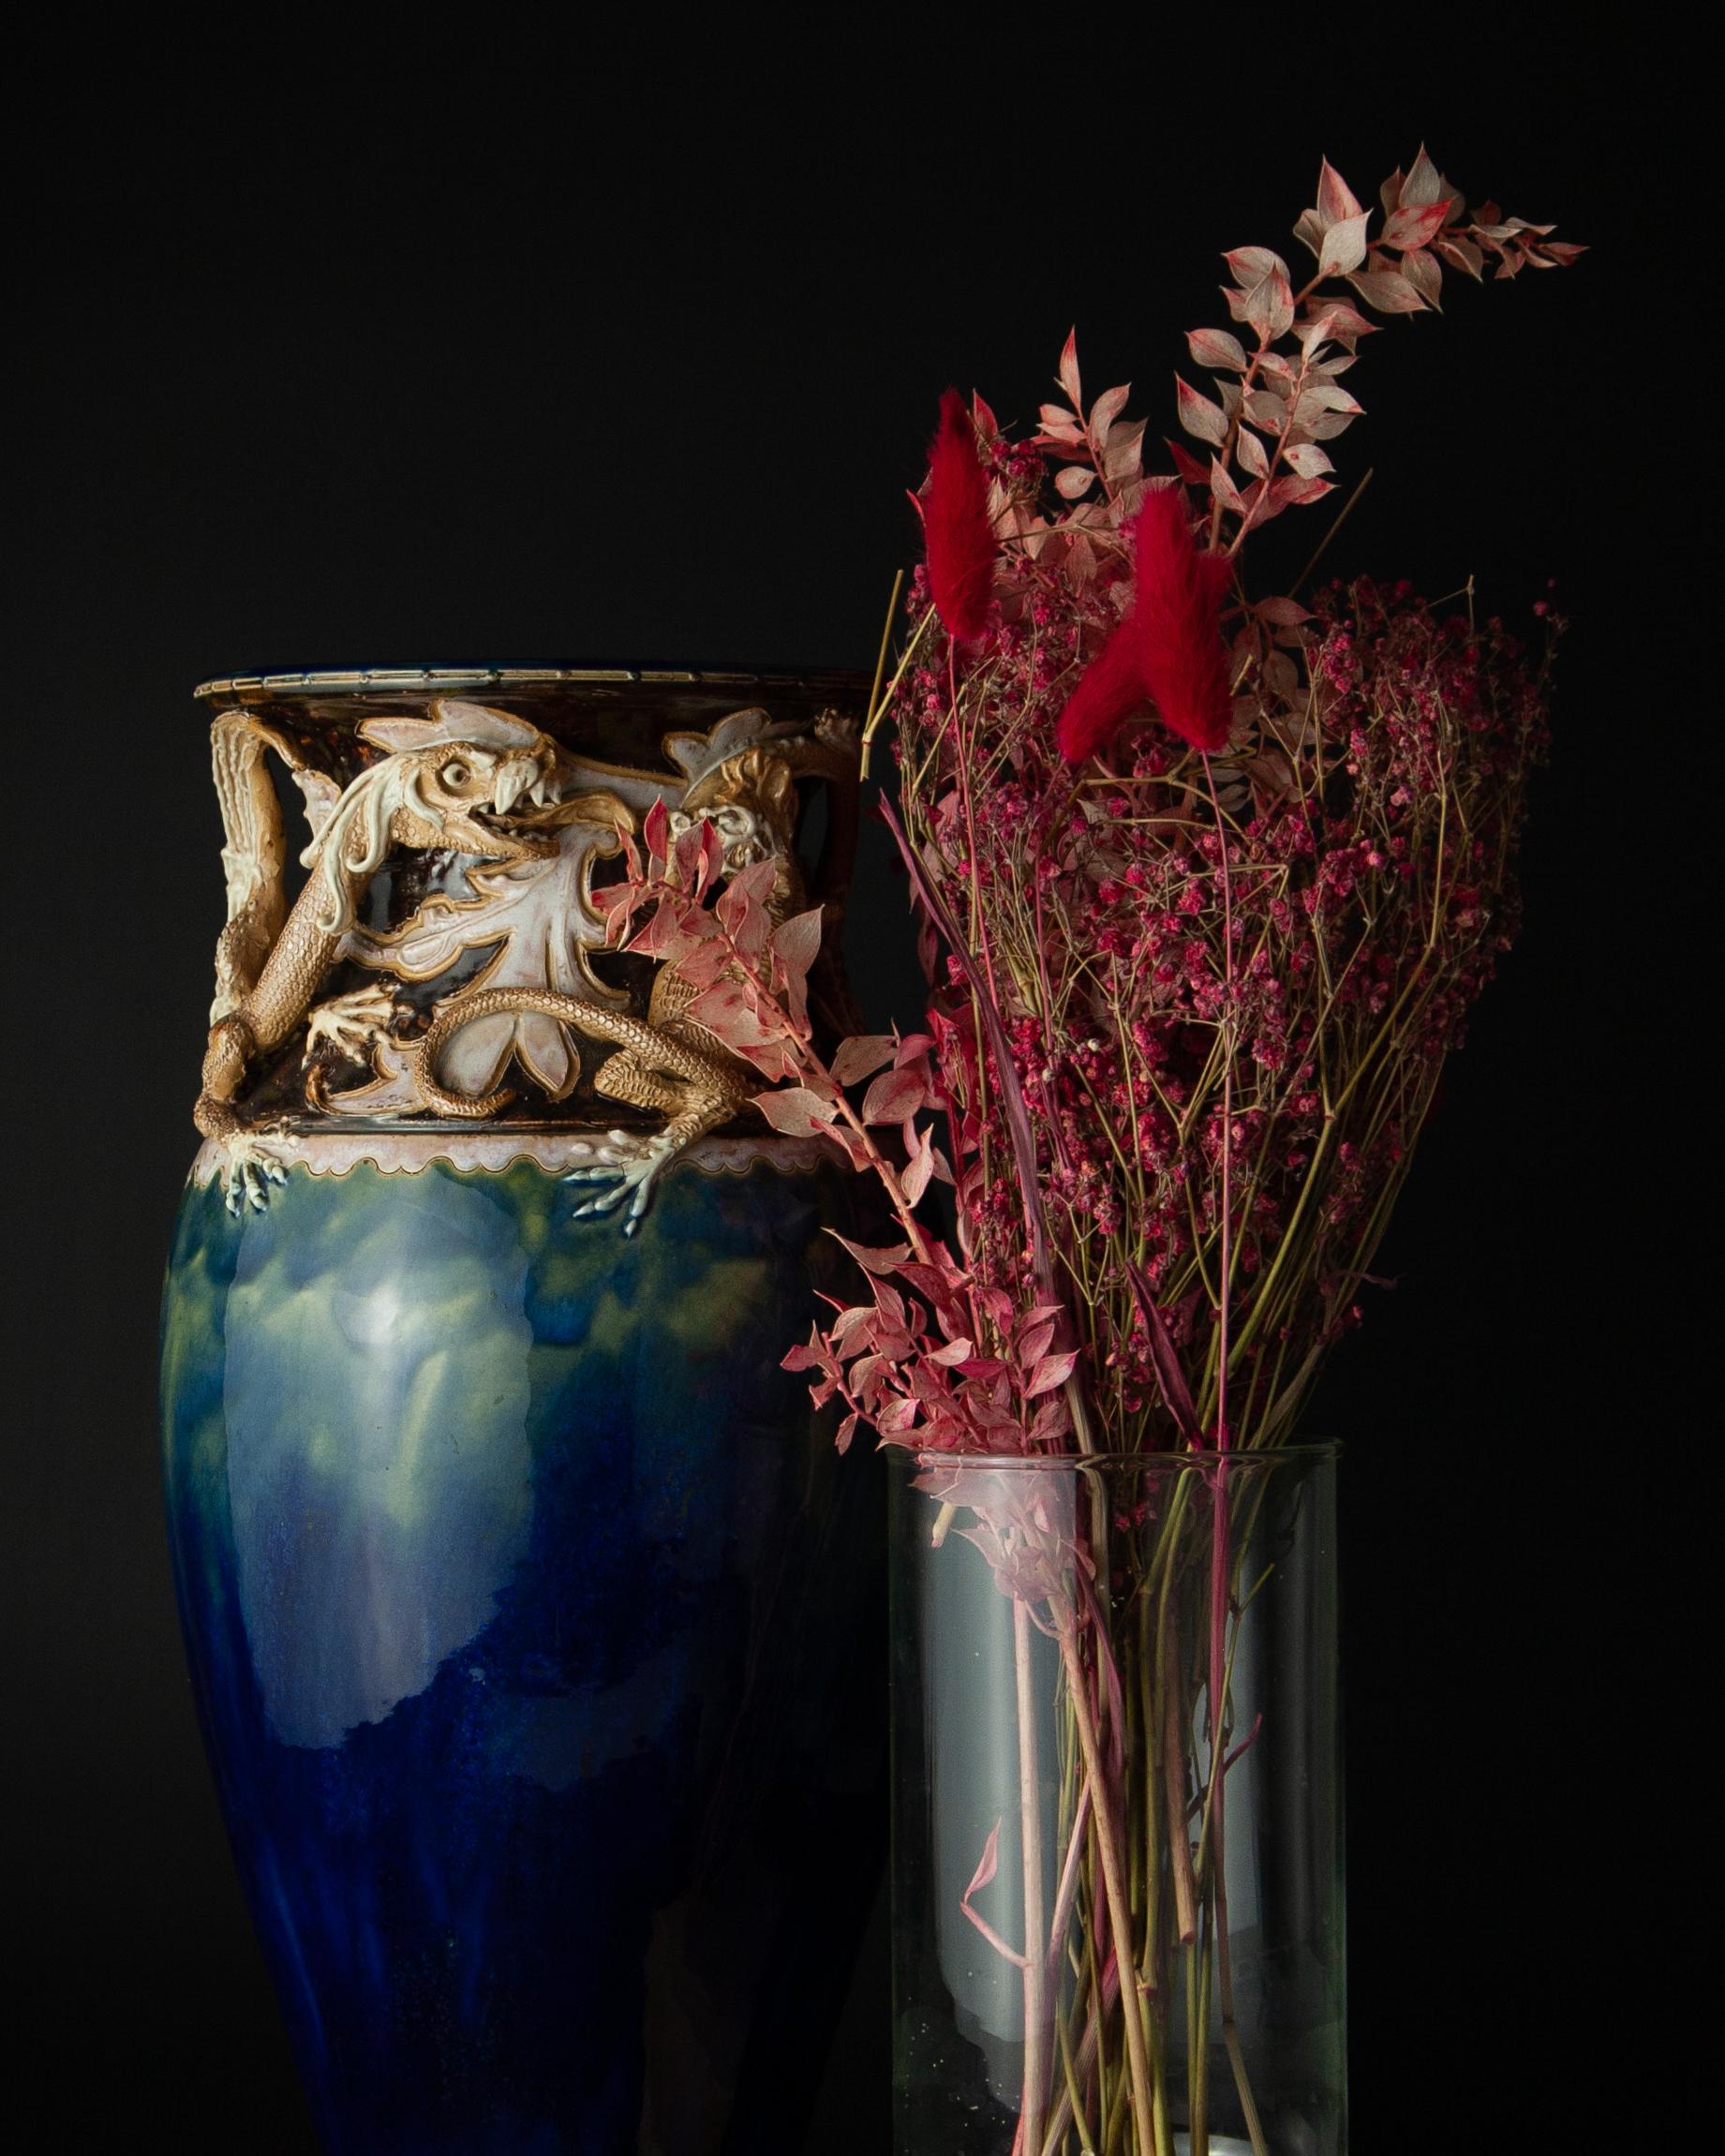 Un grand vase Lambeth de Doulton, impressionnant, réalisé vers 1885-1900 par Mark V. Marshall, assisté de Florrie Jones. 1885-1900 par Mark V. Marshall, assisté de Florrie Jones.

Le vase de Mark V. Marshall fusionne et oppose l'art gothique